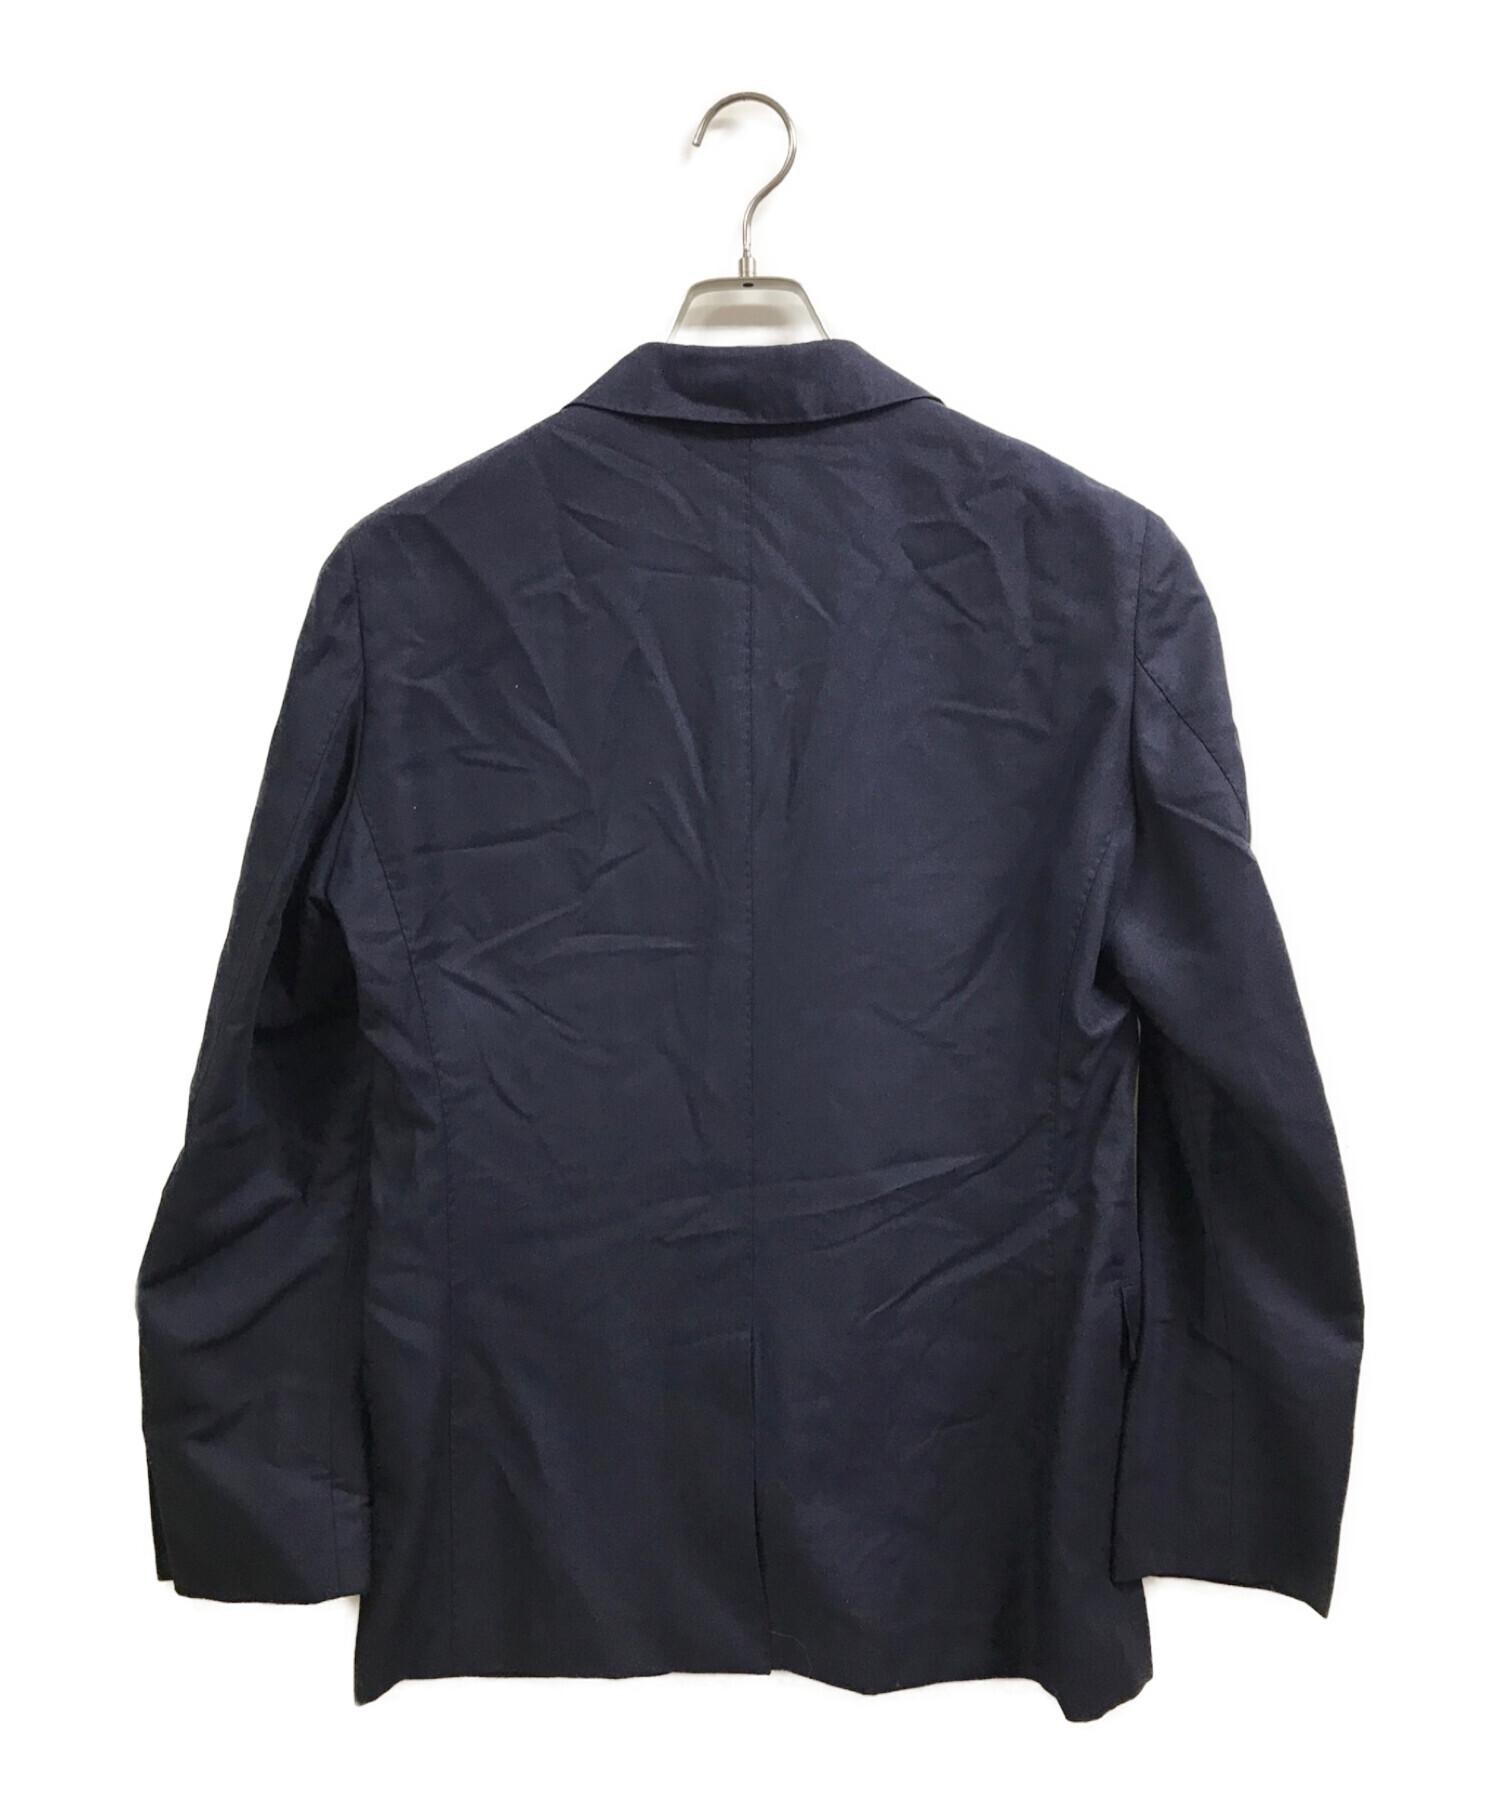 最新作正規品トゥモローランドピルグリム ErmenegildoZegna 2Bジャケット パンツ セットアップ メンズ SIZE 48 (M) TOMORROWLAND PILGRIM Mサイズ